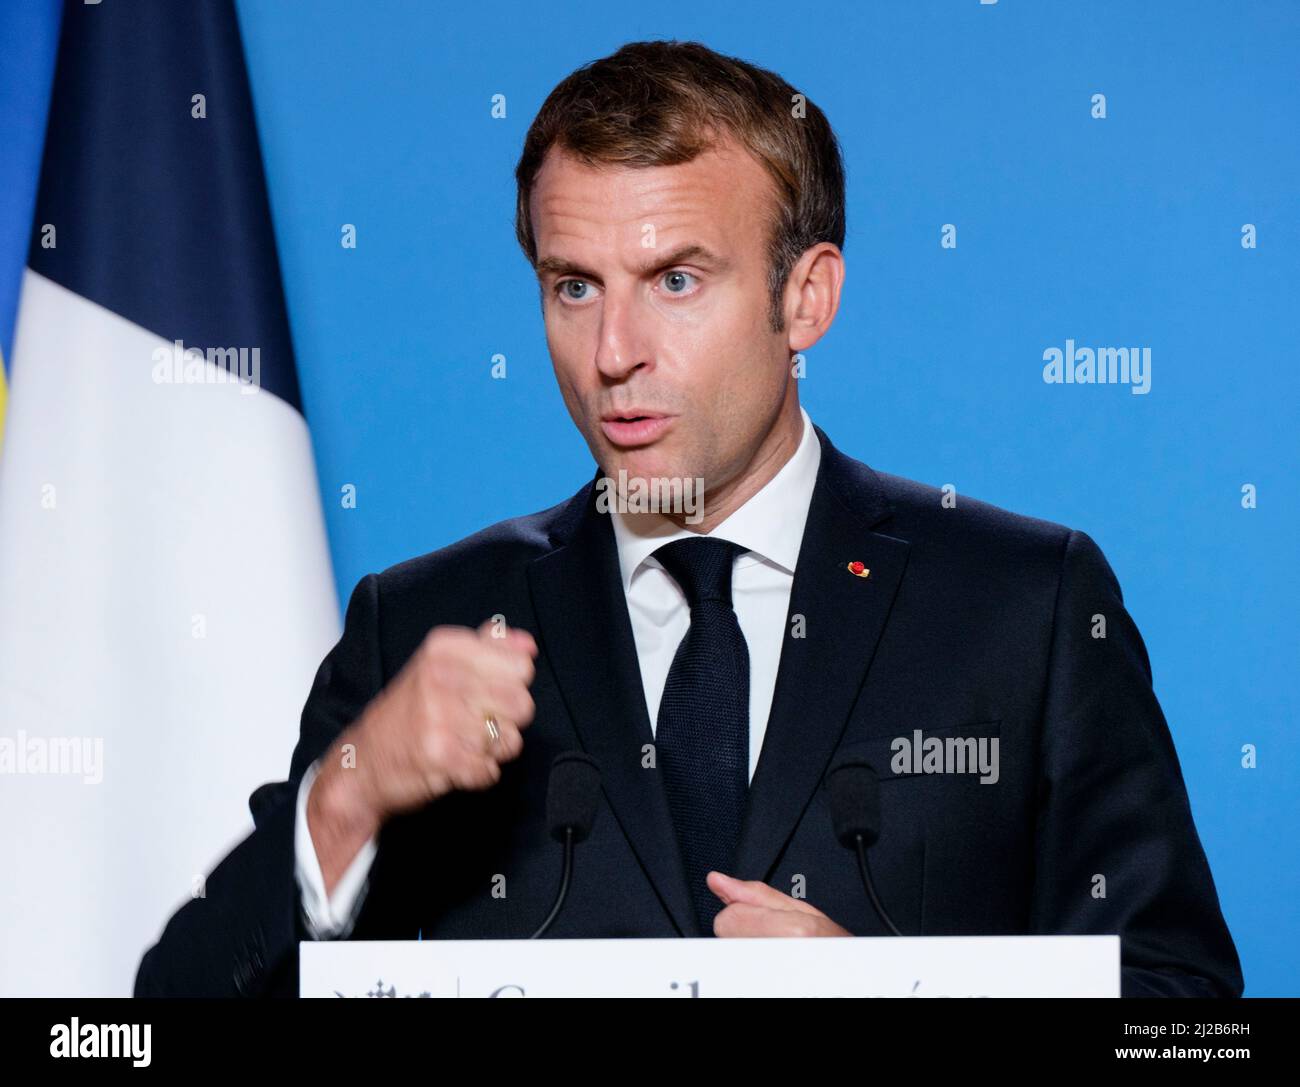 Belgien, Brüssel, 22. Oktober 2021: Präsident der Französischen Republik Emmanuel Macron nimmt an einer Pressekonferenz zum Europäischen Rat Teil. E Stockfoto